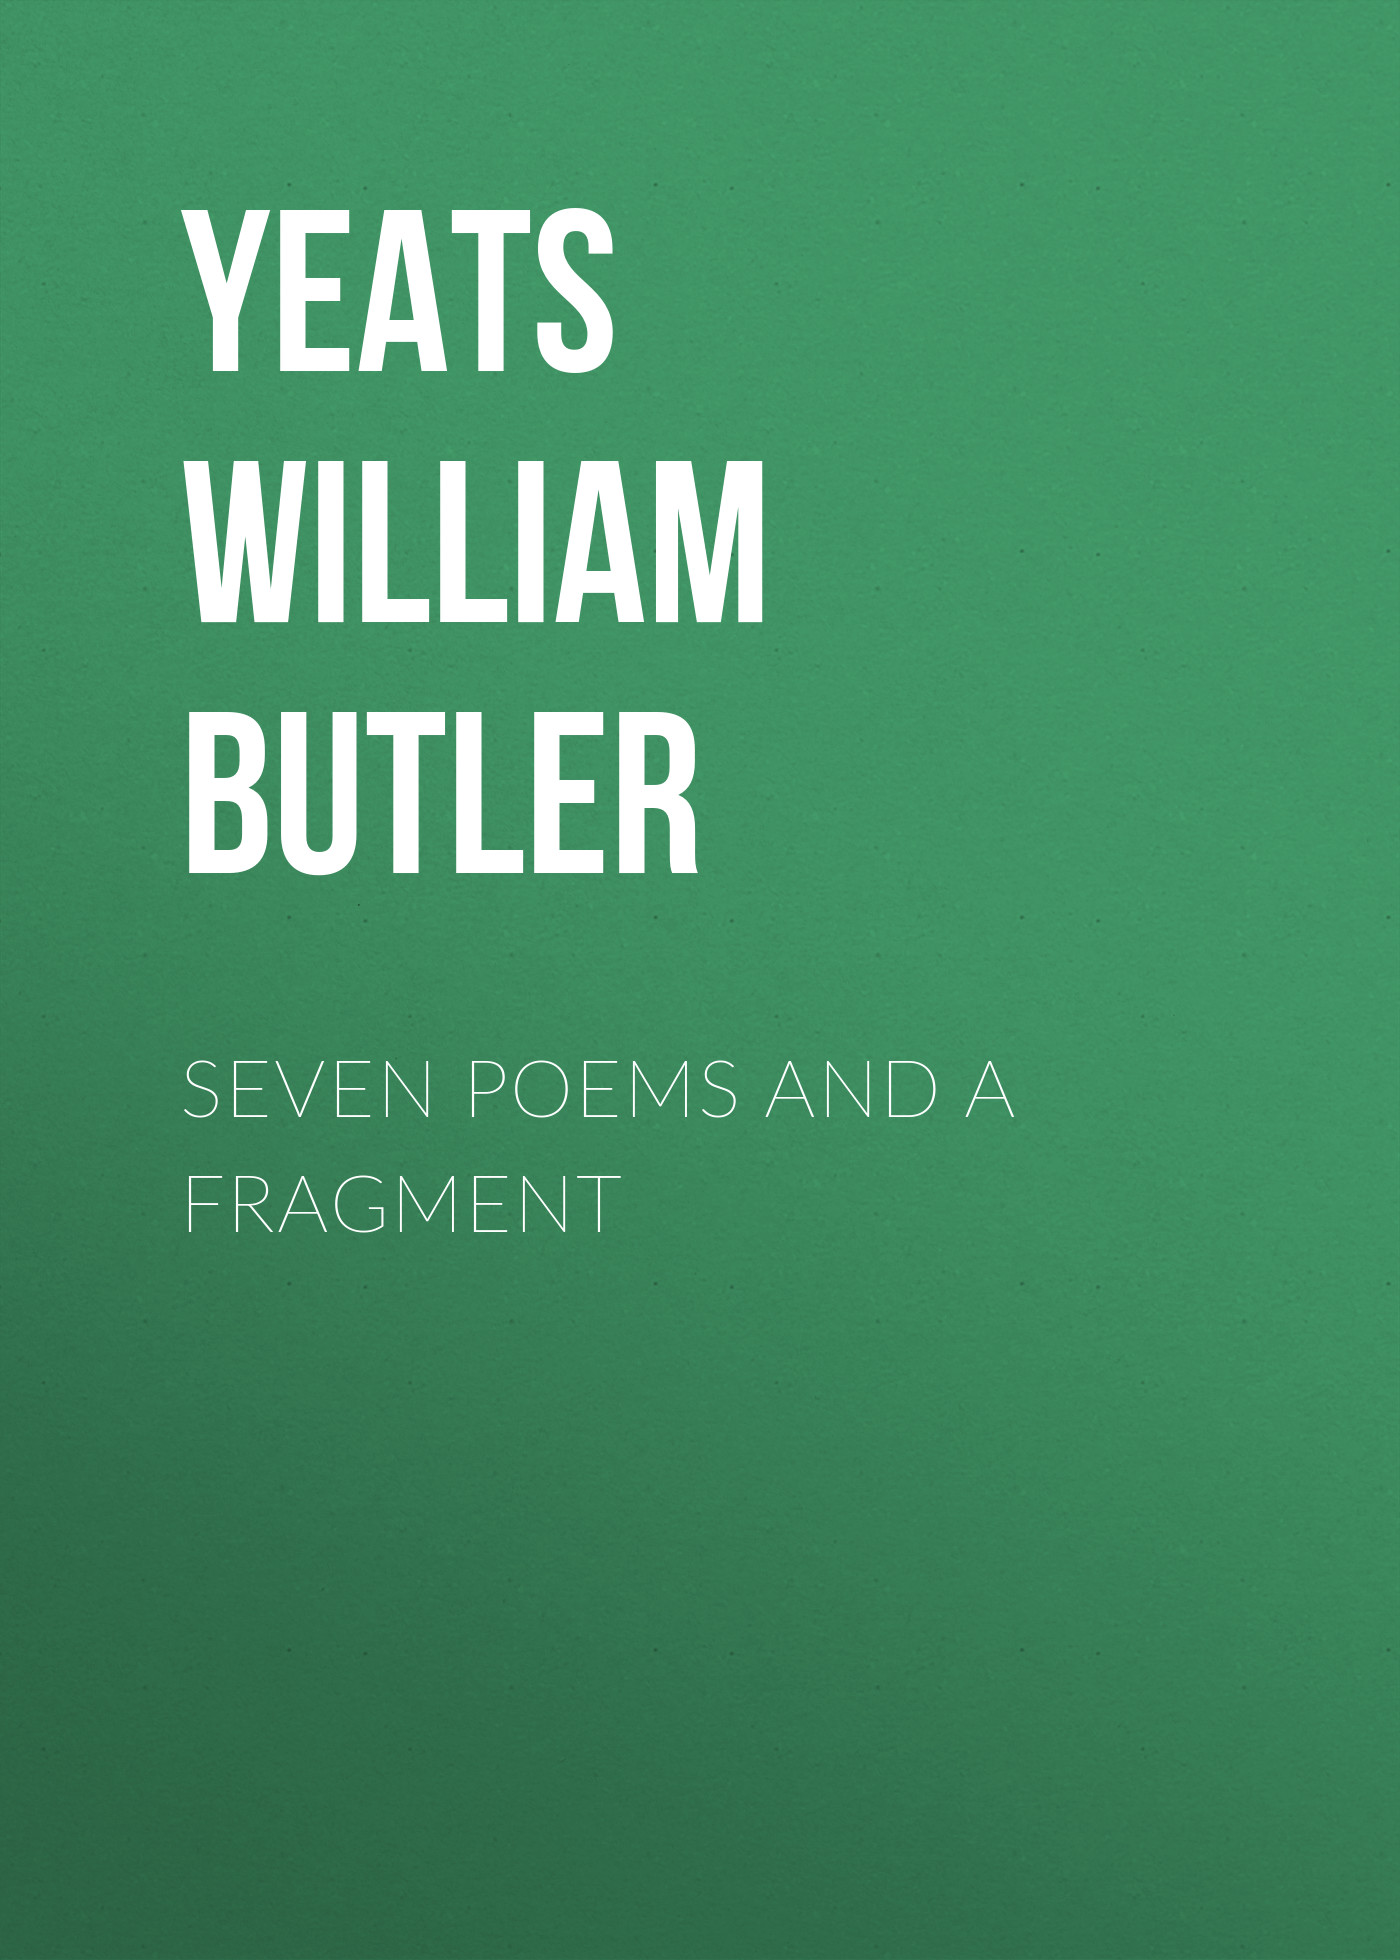 Книга Seven Poems and a Fragment из серии , созданная William Yeats, может относится к жанру Поэзия, Зарубежная классика, Зарубежные стихи. Стоимость электронной книги Seven Poems and a Fragment с идентификатором 23164099 составляет 0 руб.